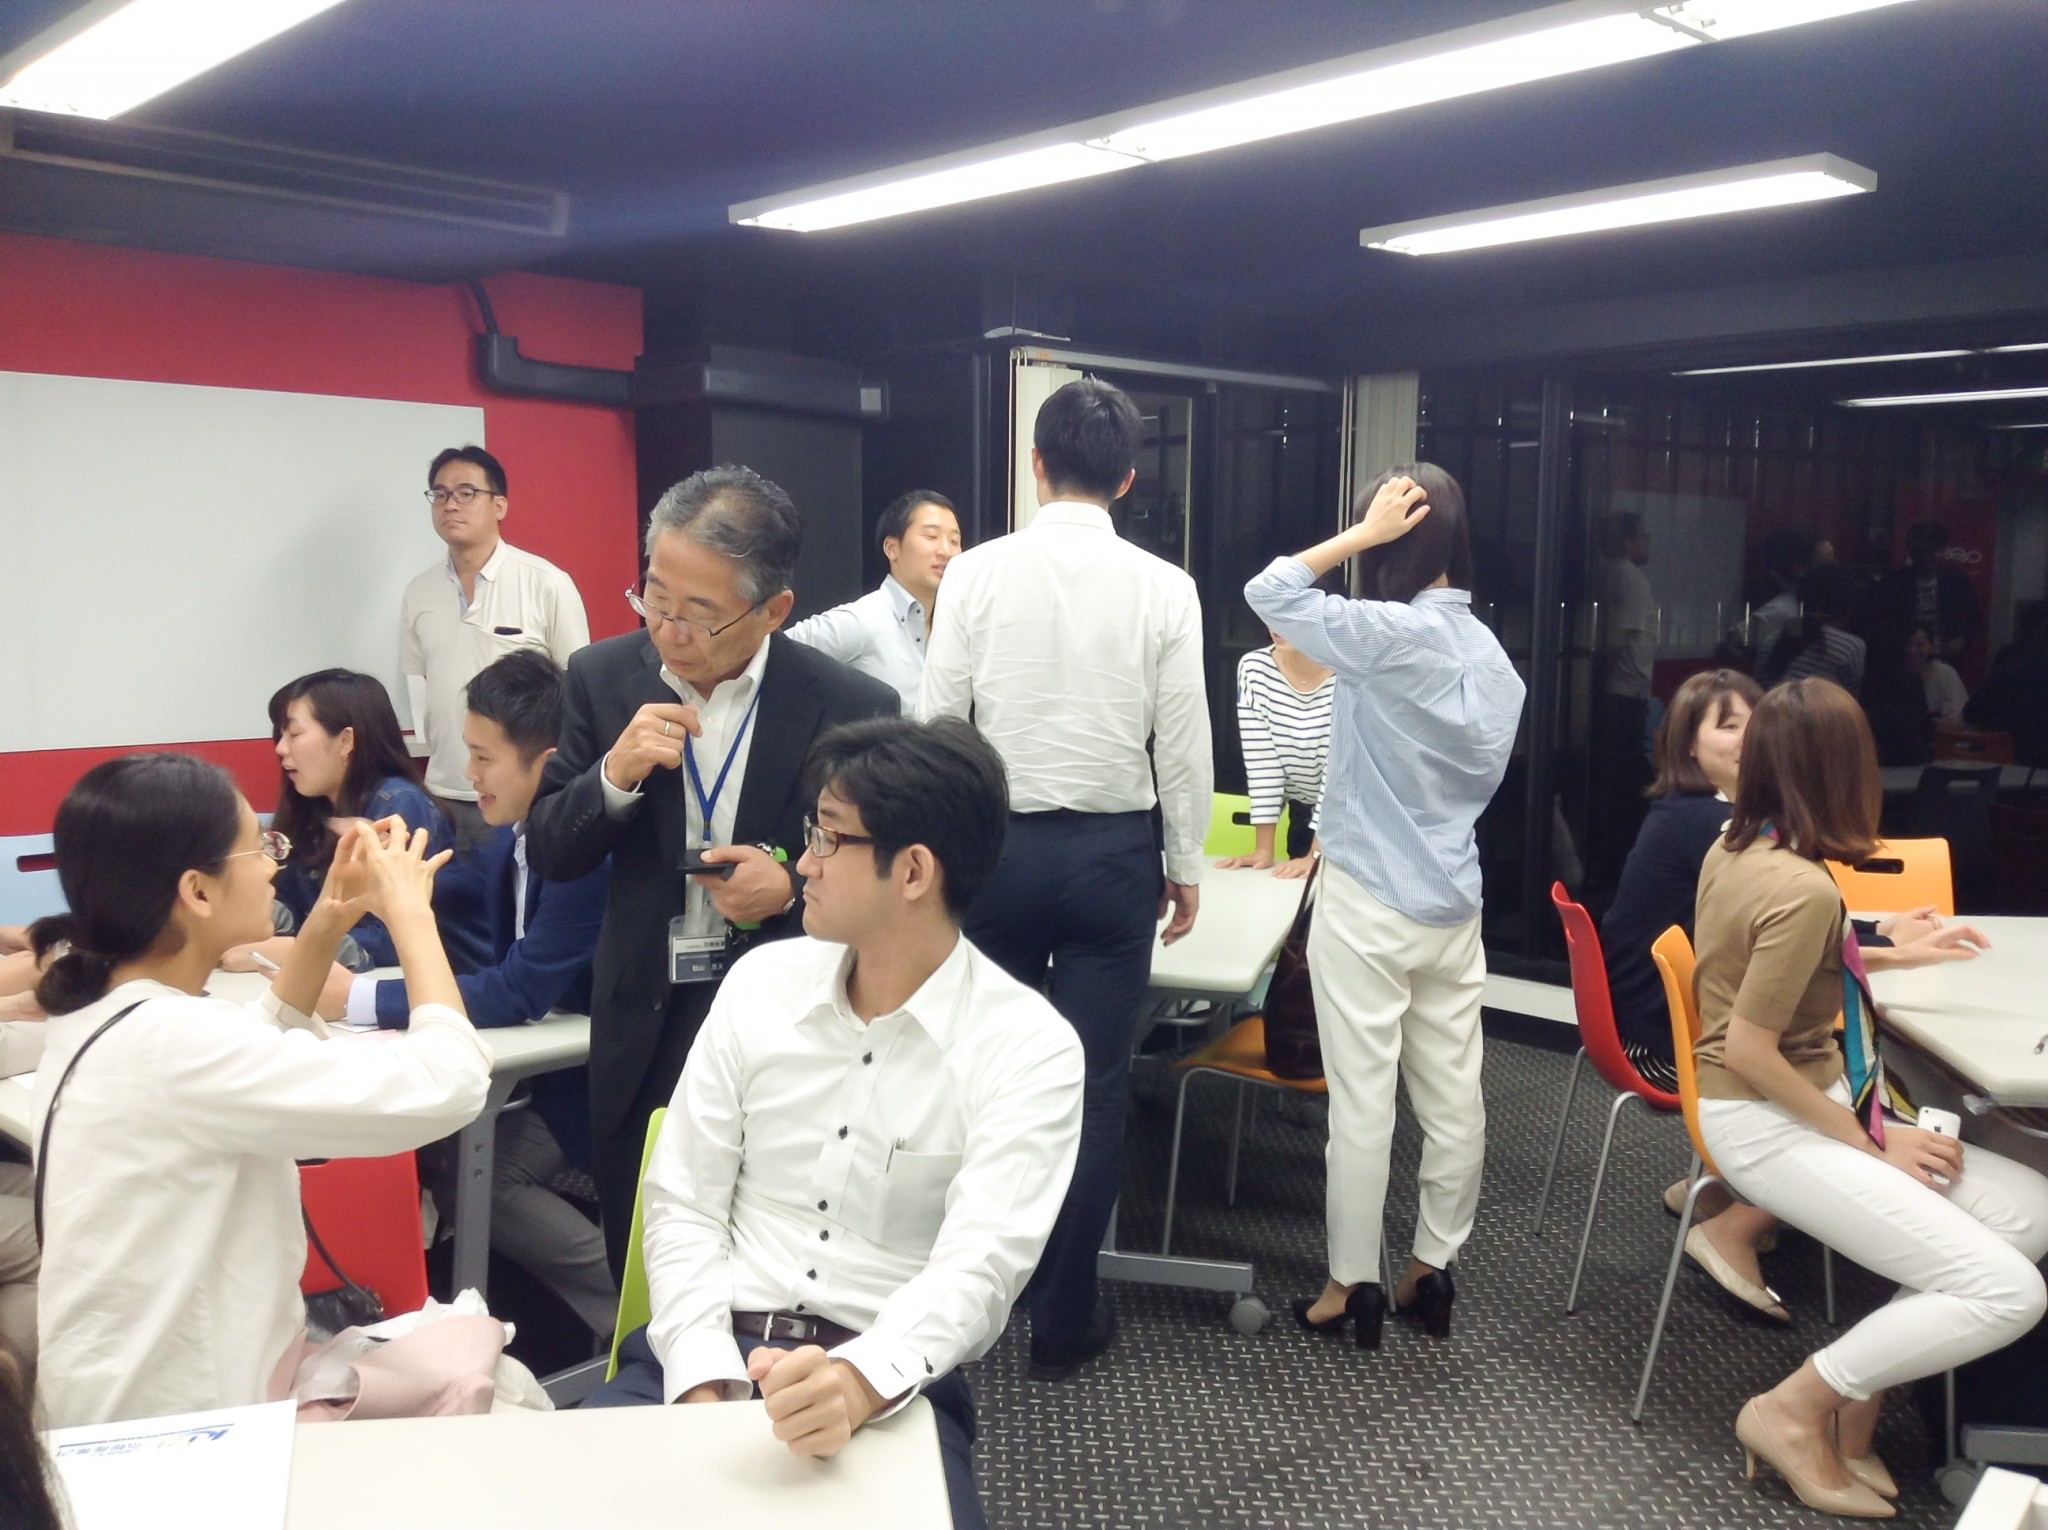 懇親会では、参加者が好き好きに交流していく。会のなかで気になっていたことや京都（地元）トークなどで賑わいをみせた。